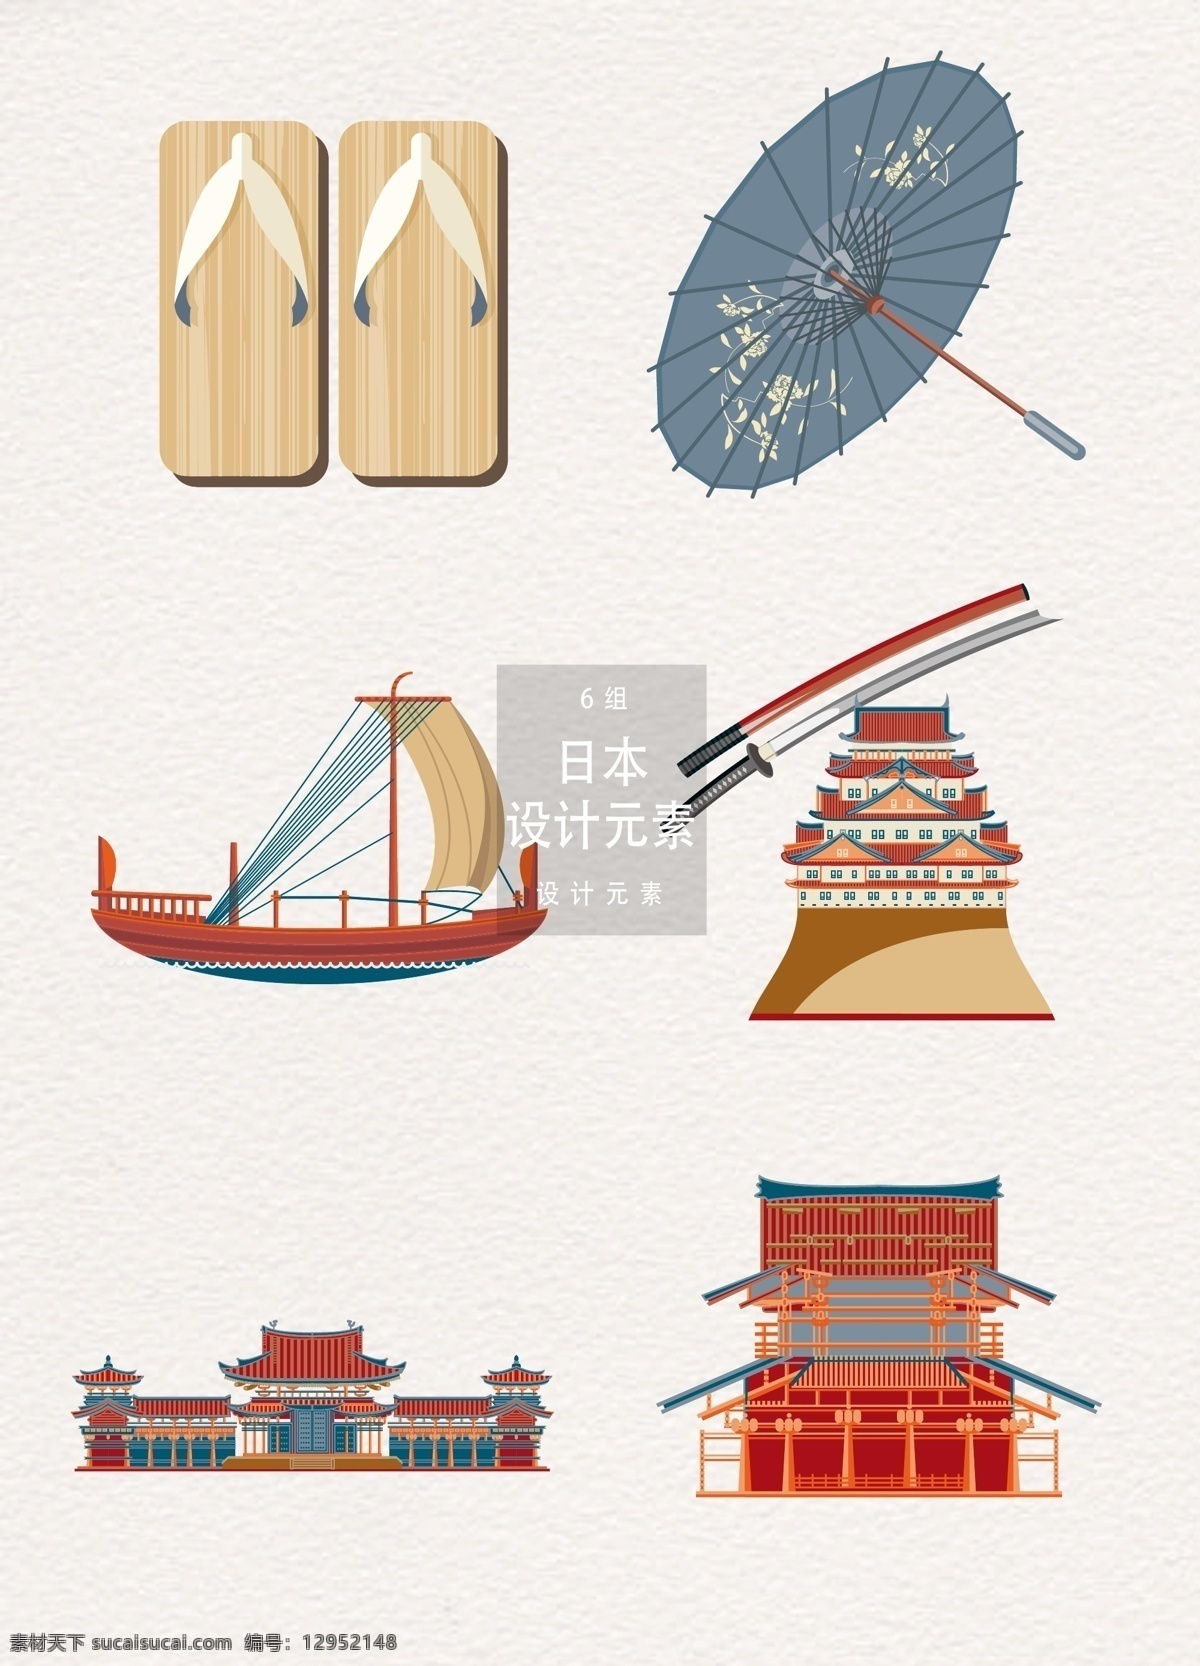 日本 元素 装饰 图案 装饰图案 雨伞 帆船 传统建筑 中式建筑 日本元素 日本装饰图案 木屐 武士刀